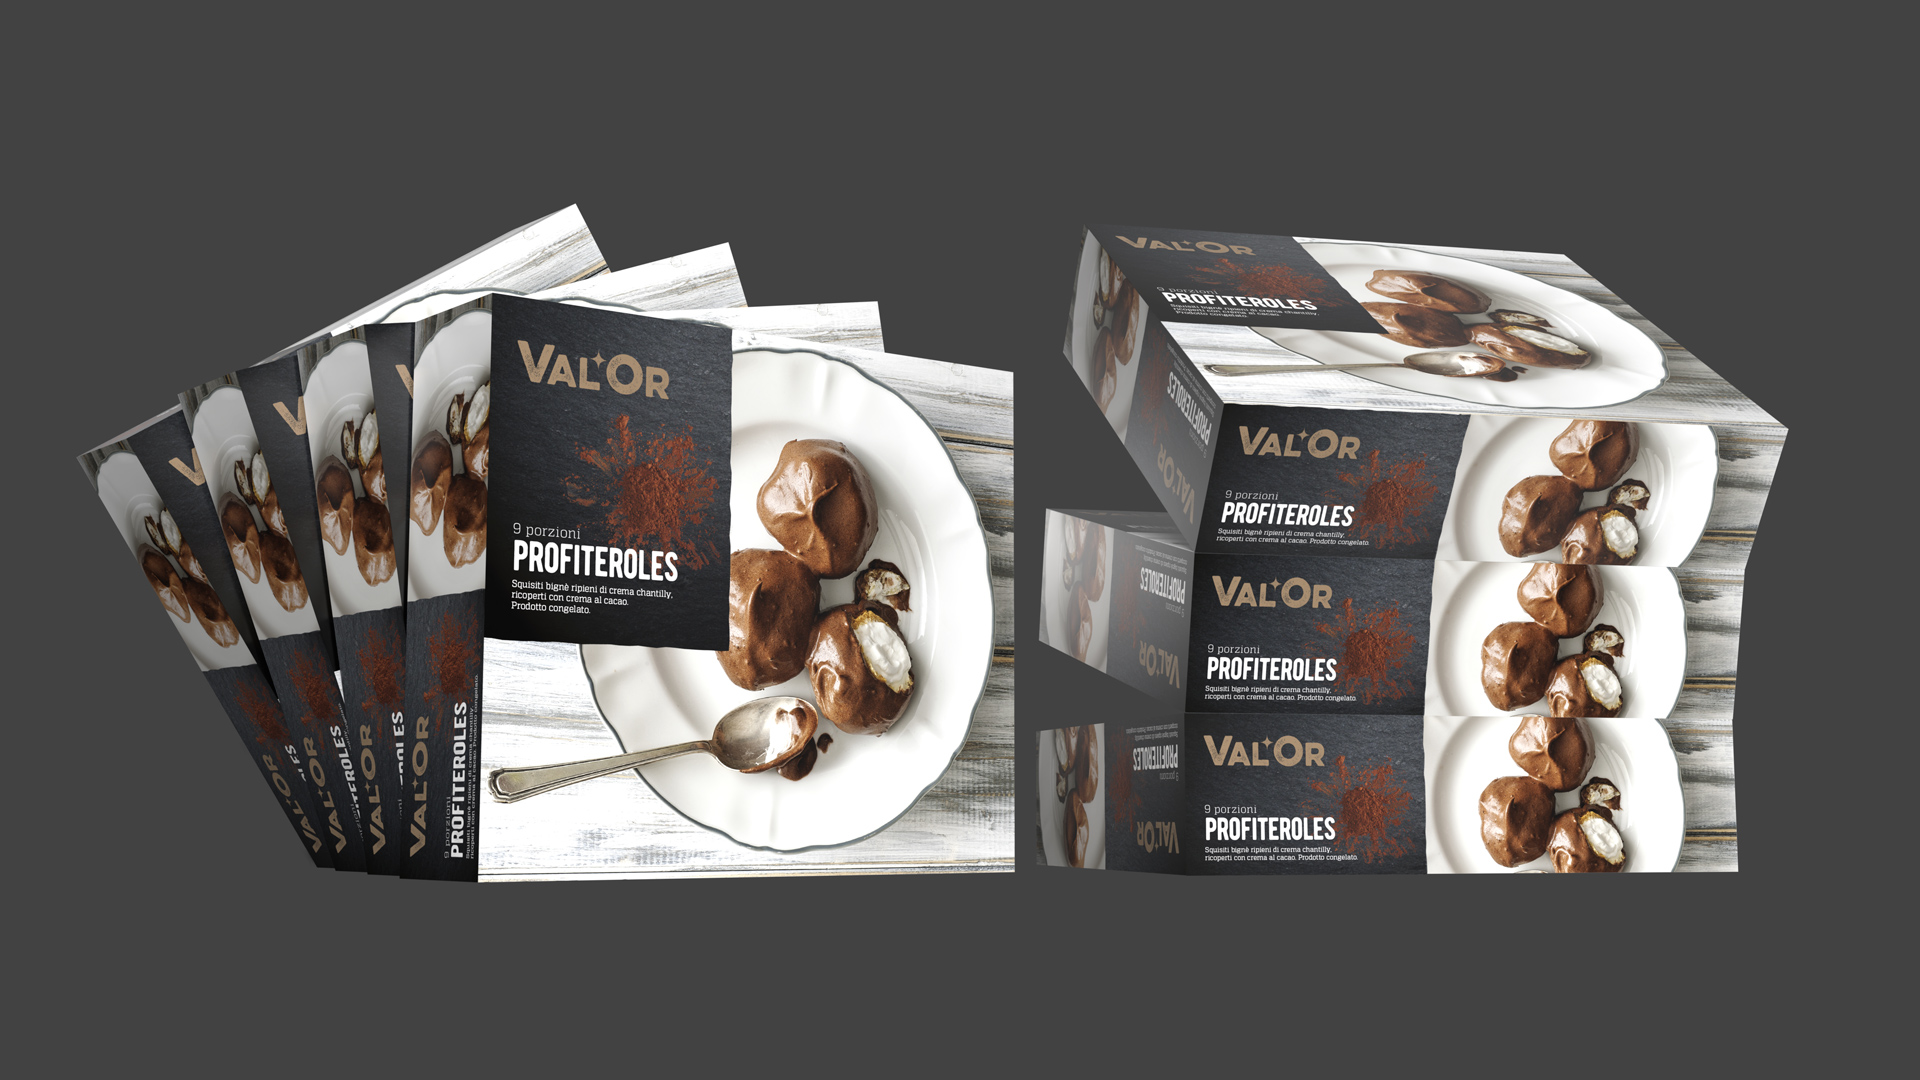 Valor packaging b Rossetti brand design